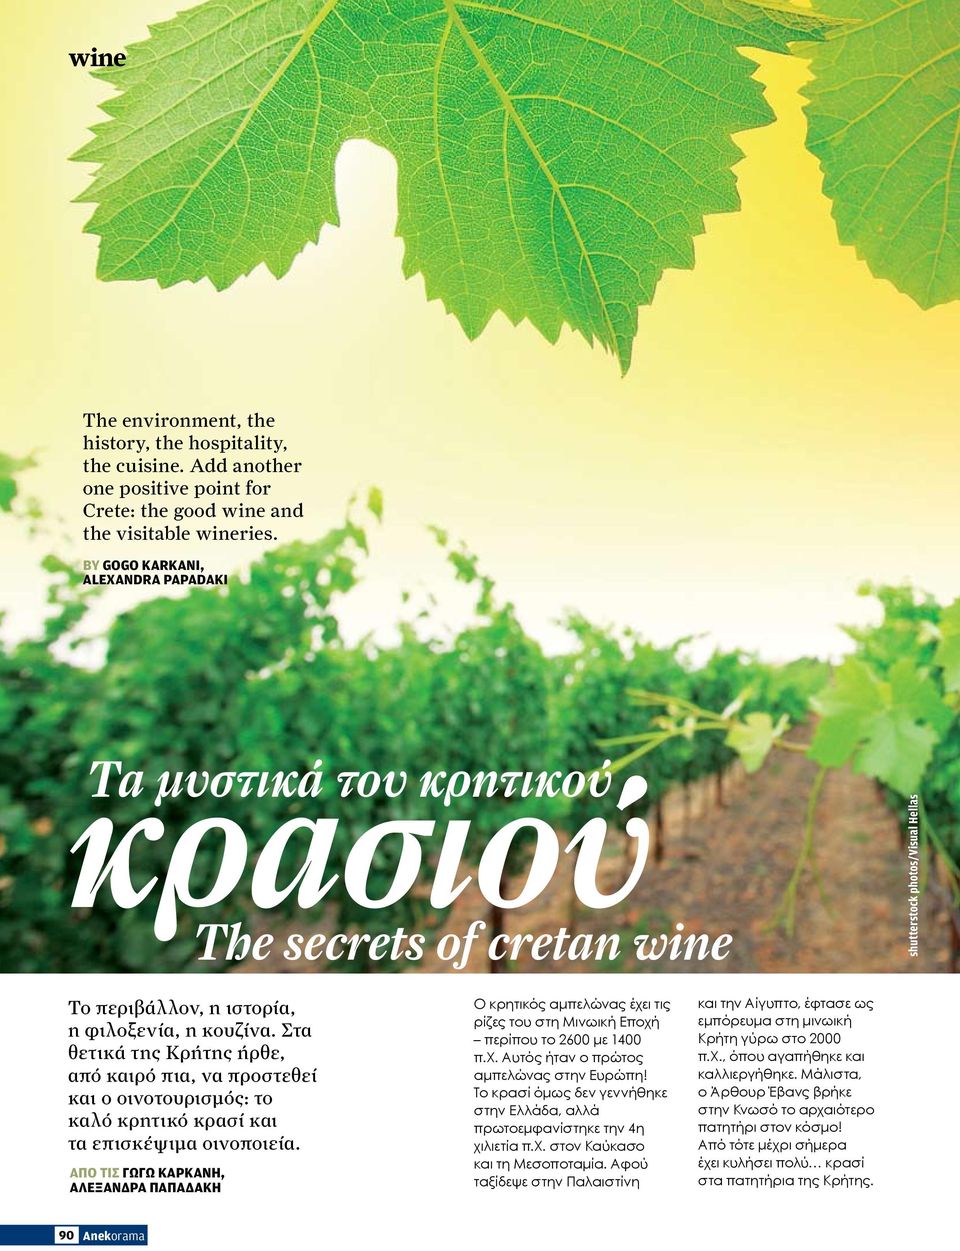 Στα θετικά της Κρήτης ήρθε, από καιρό πια, να προστεθεί και ο οινοτουρισμός: το καλό κρητικό κρασί και τα επισκέψιμα οινοποιεία.